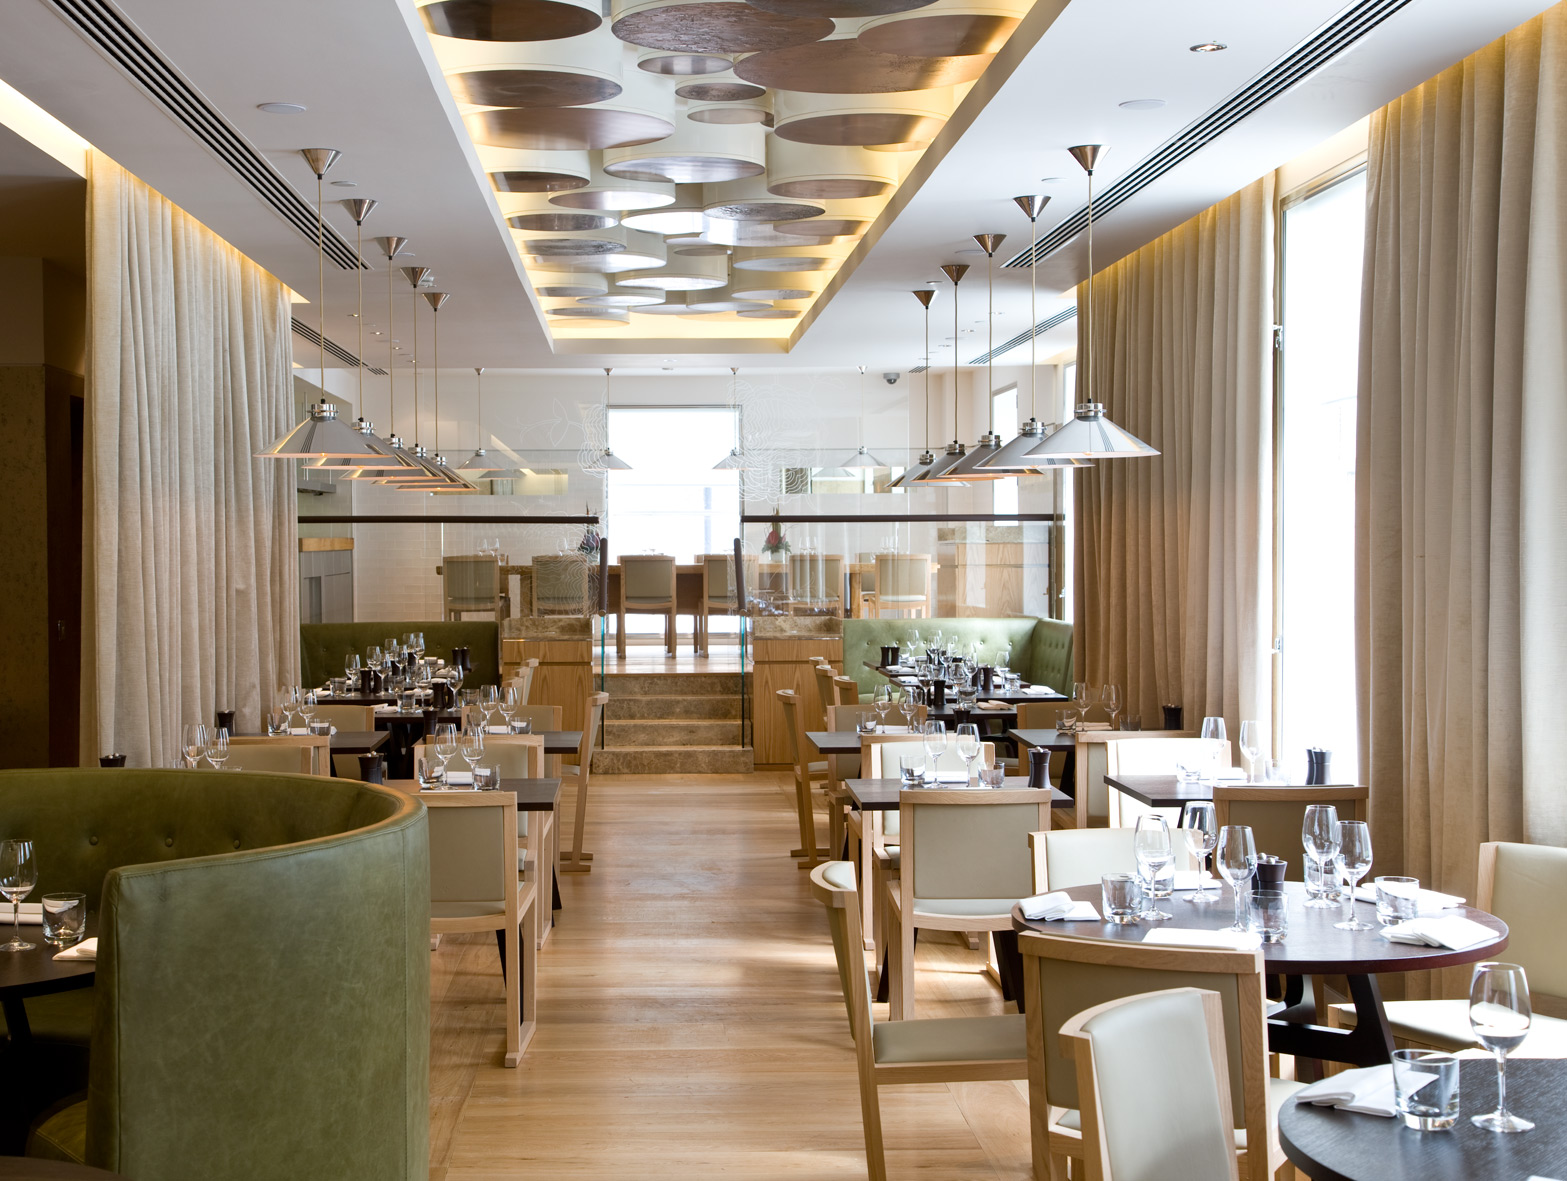 Ресторан Gordon Ramsay в  центре Лондона выглядит очень современно и элегантно